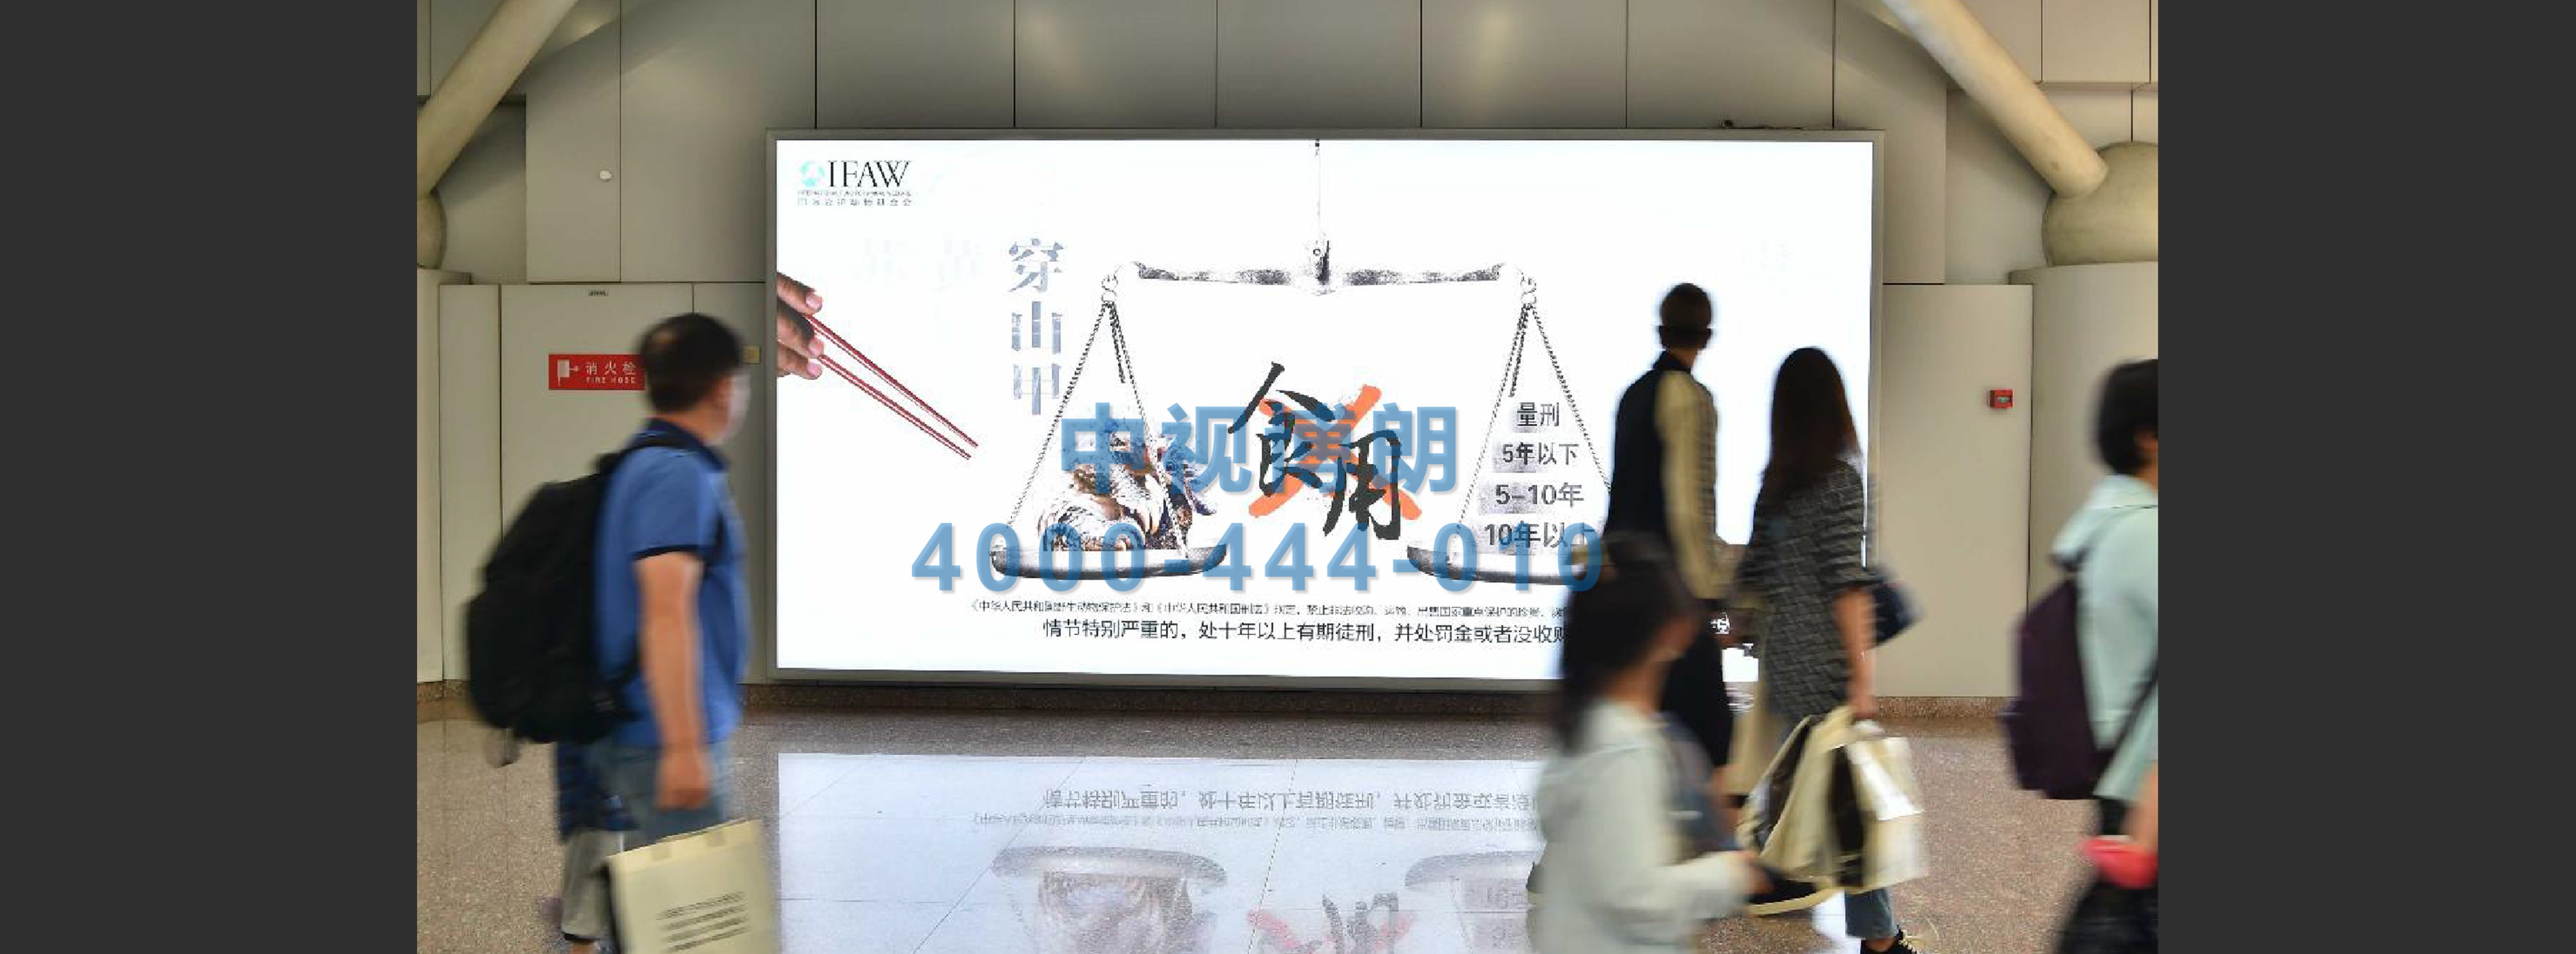 北京首都机场广告-T2国际到达走廊灯箱D178